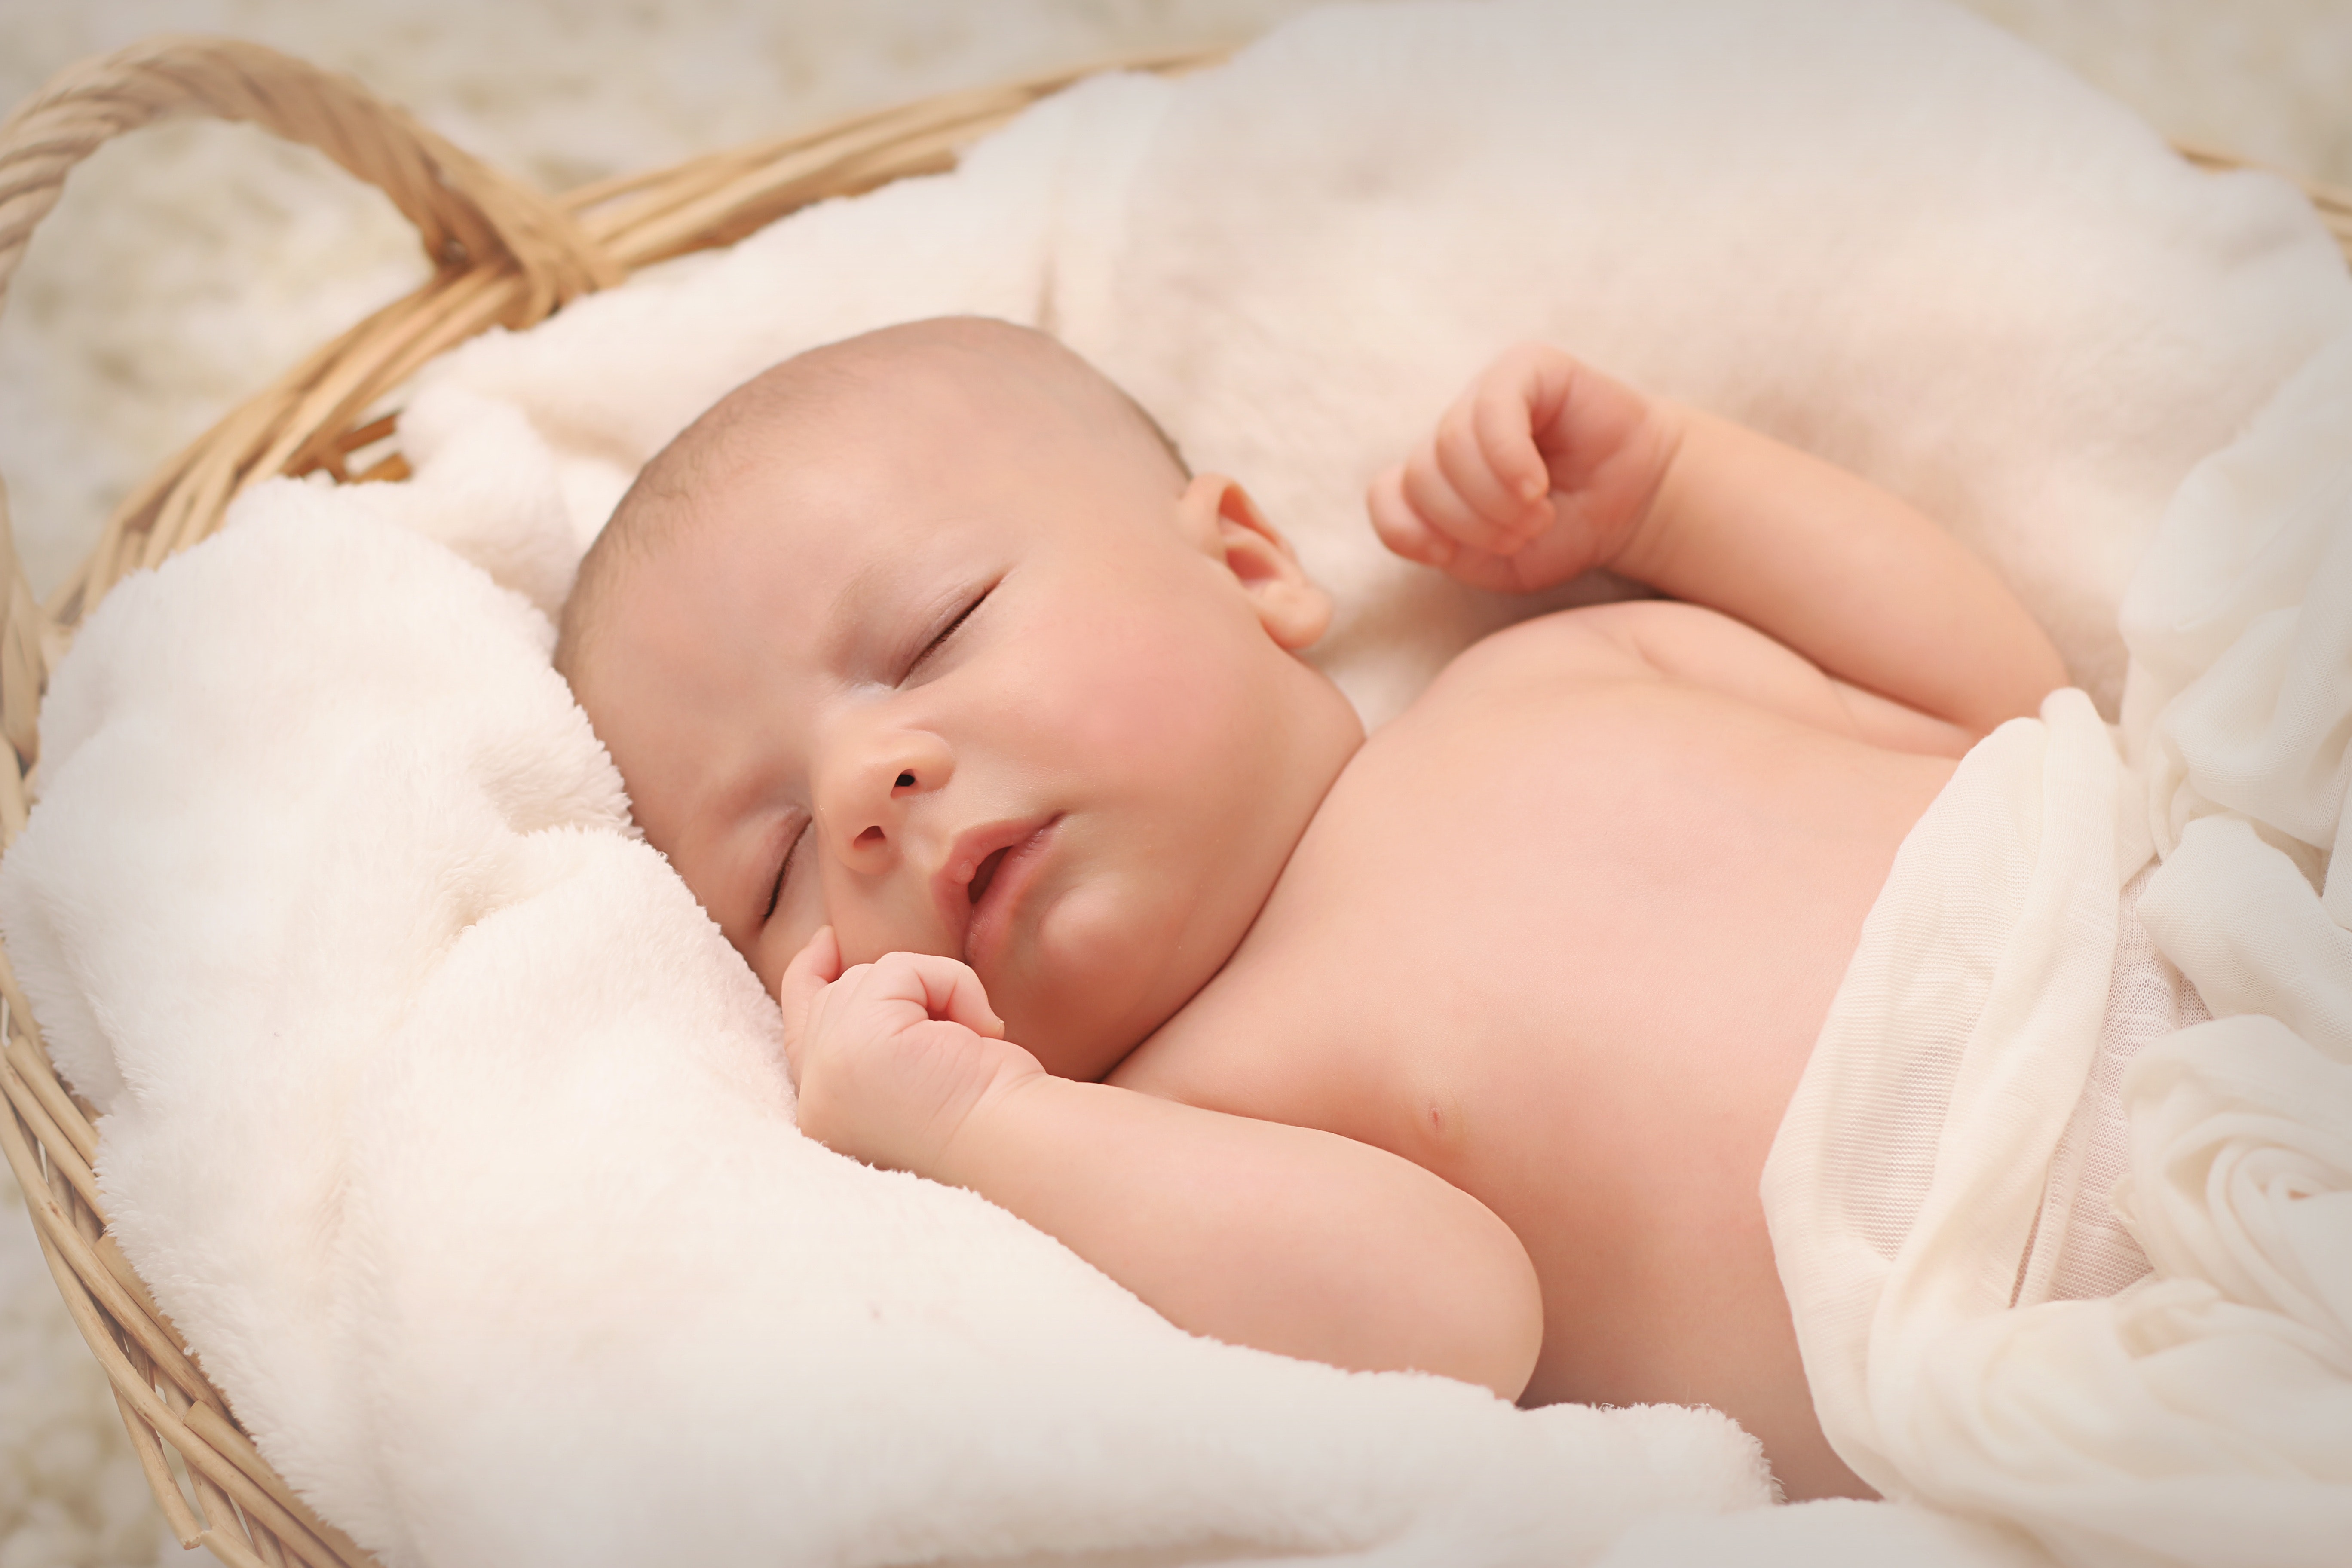 Marea Britanie: primii bebeluși născuți cu ajutorul ADN-ului de la trei persoane